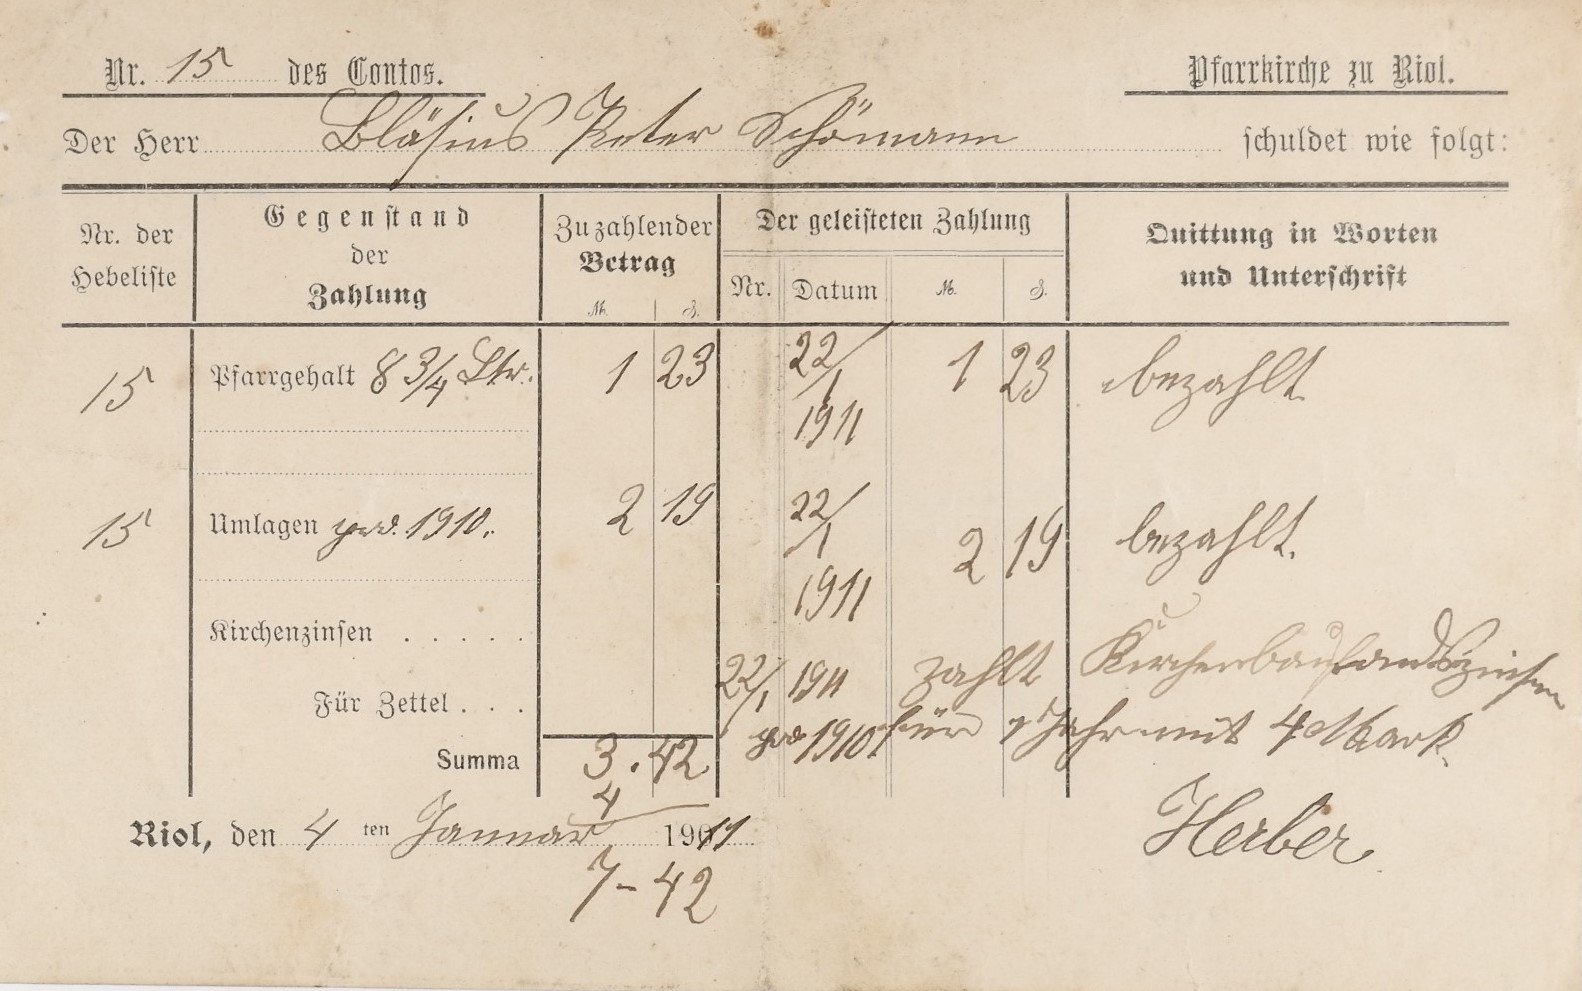 Rechnung vom 4. Januar 1911 (Pfarrkirche zu Riol) (Volkskunde- und Freilichtmuseum Roscheider Hof CC0)